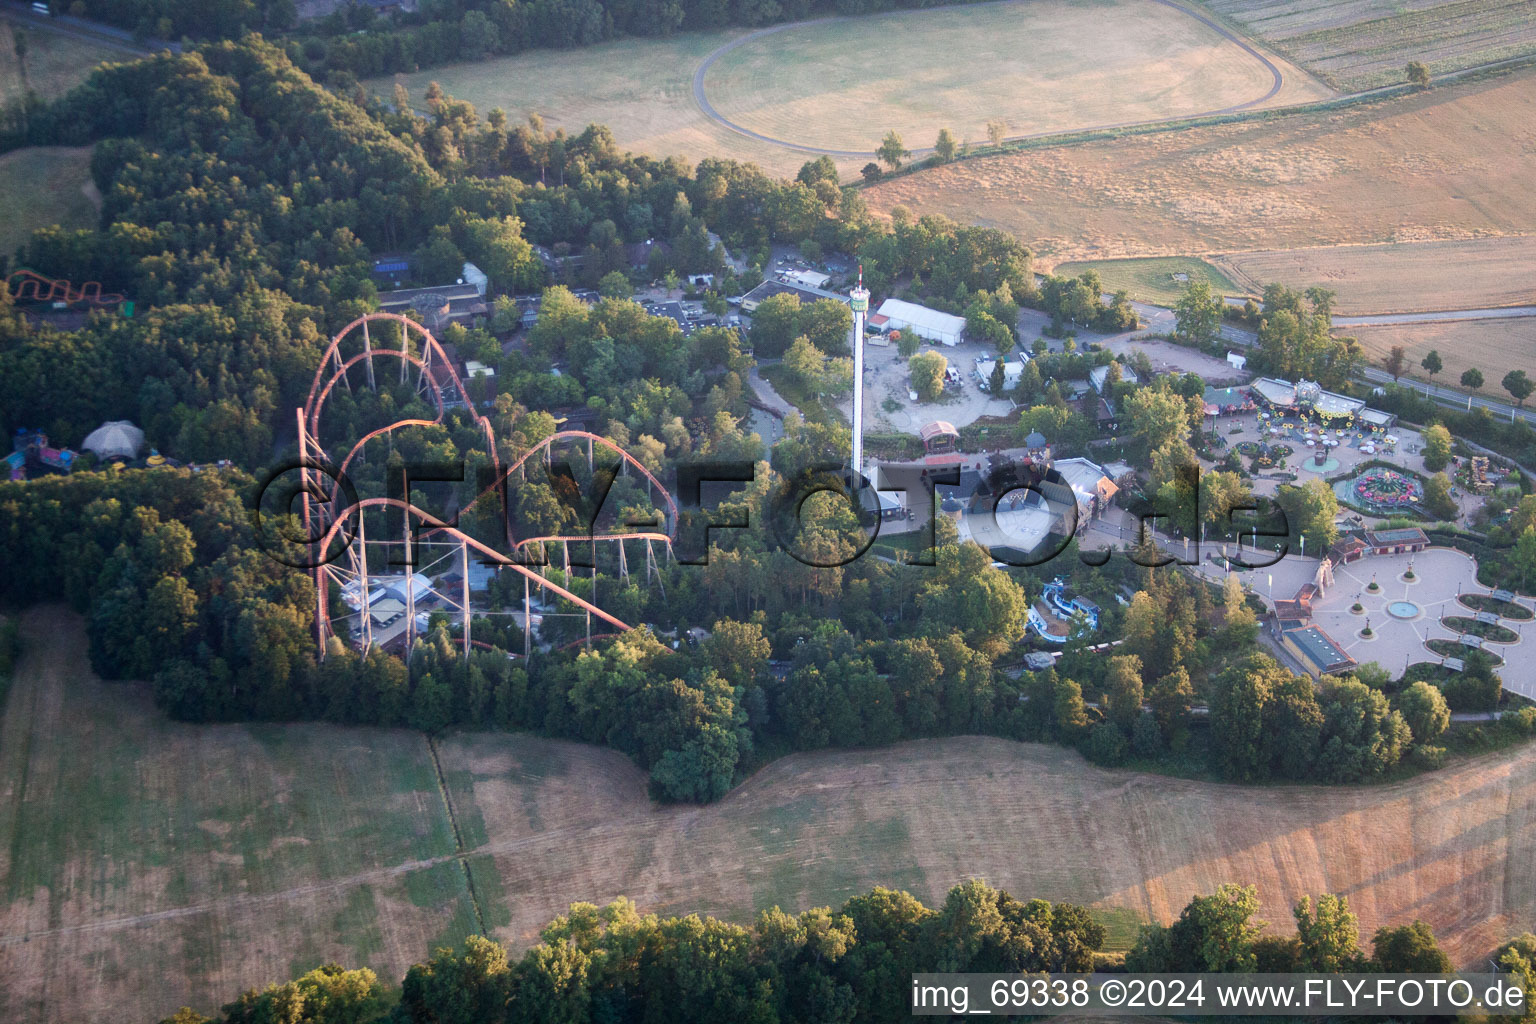 Luftbild von Ferienhaus- Anlage des Ferienparks Holiday Park in Haßloch im Bundesland Rheinland-Pfalz, Deutschland